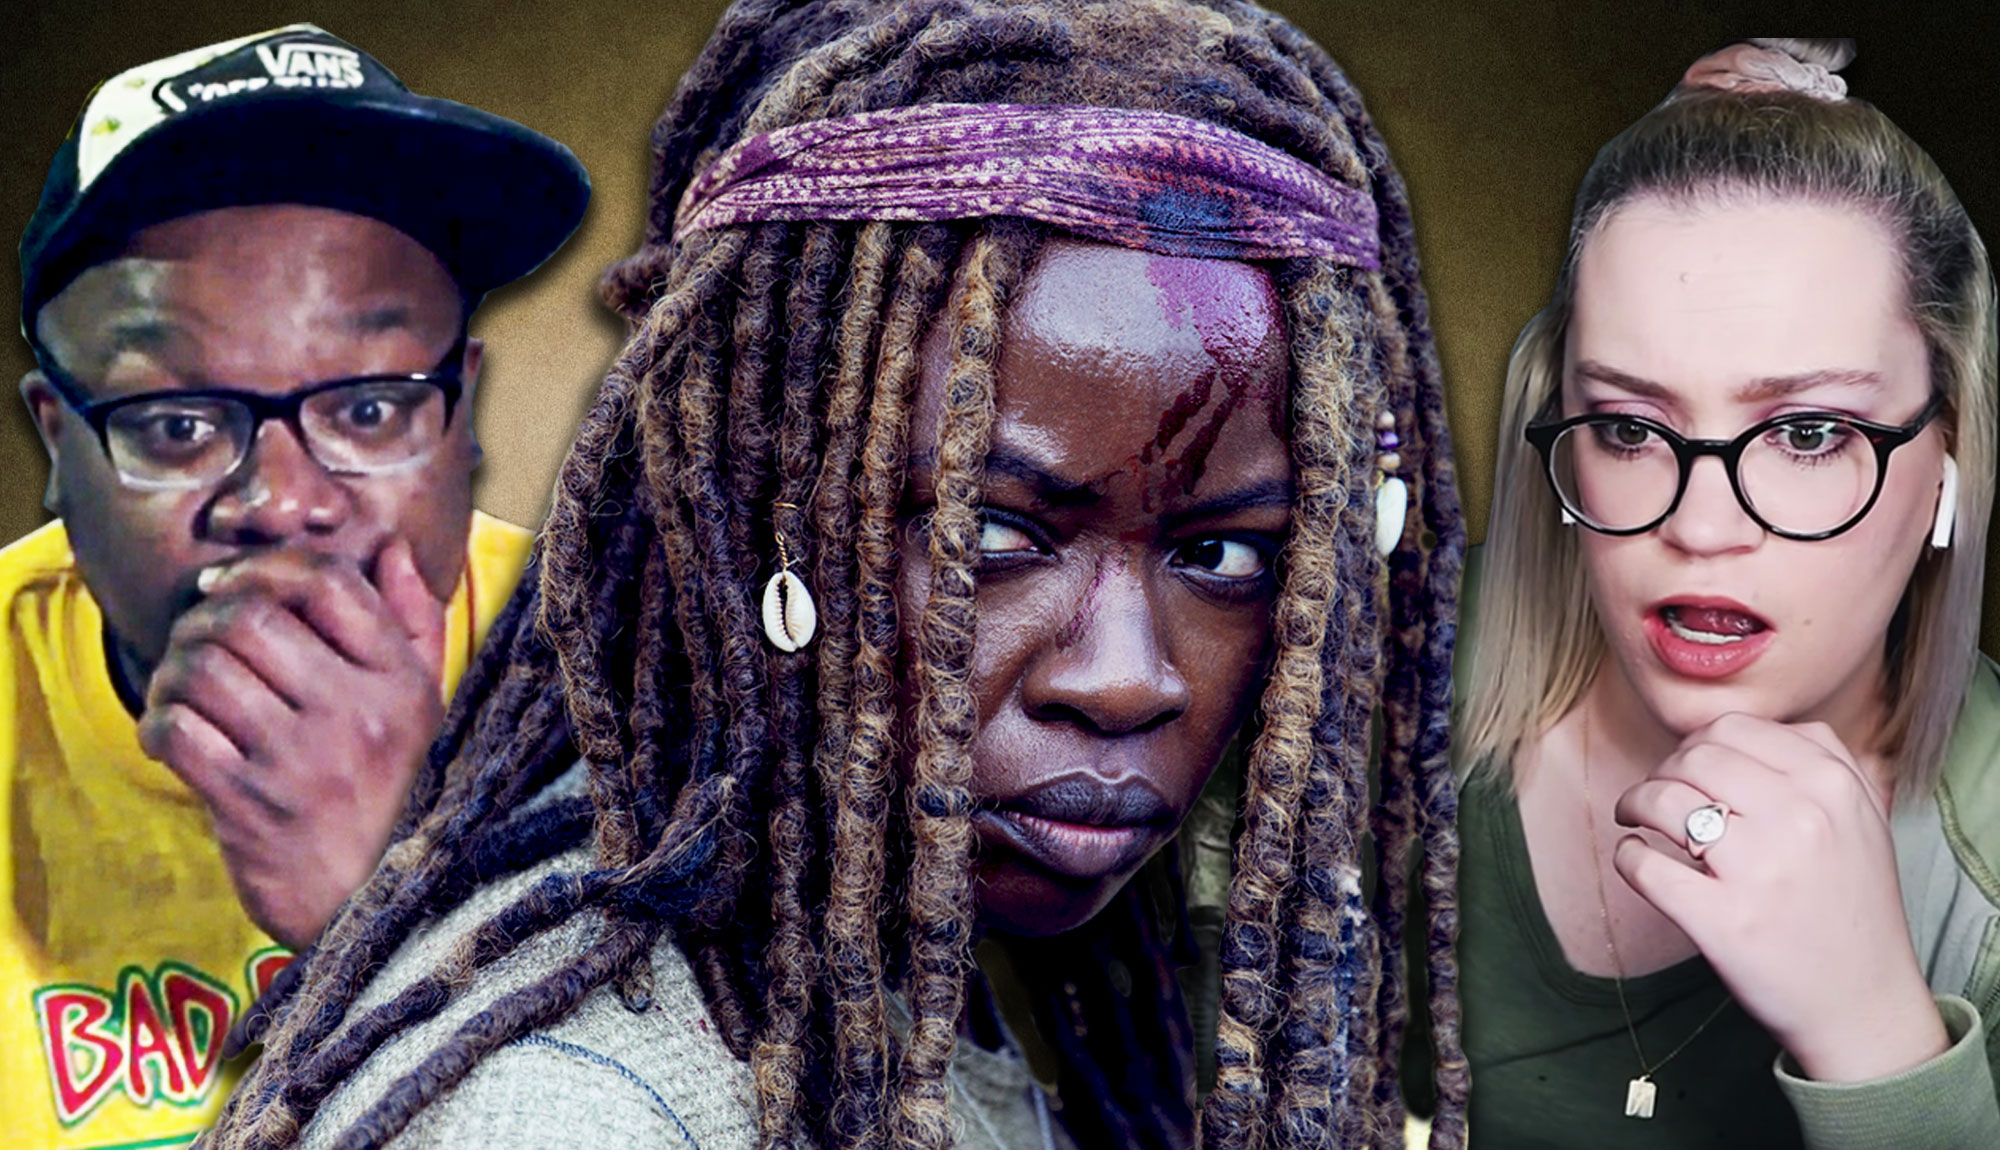 Fans React To The Walking Dead Season 9 Episode 14: “Scars”